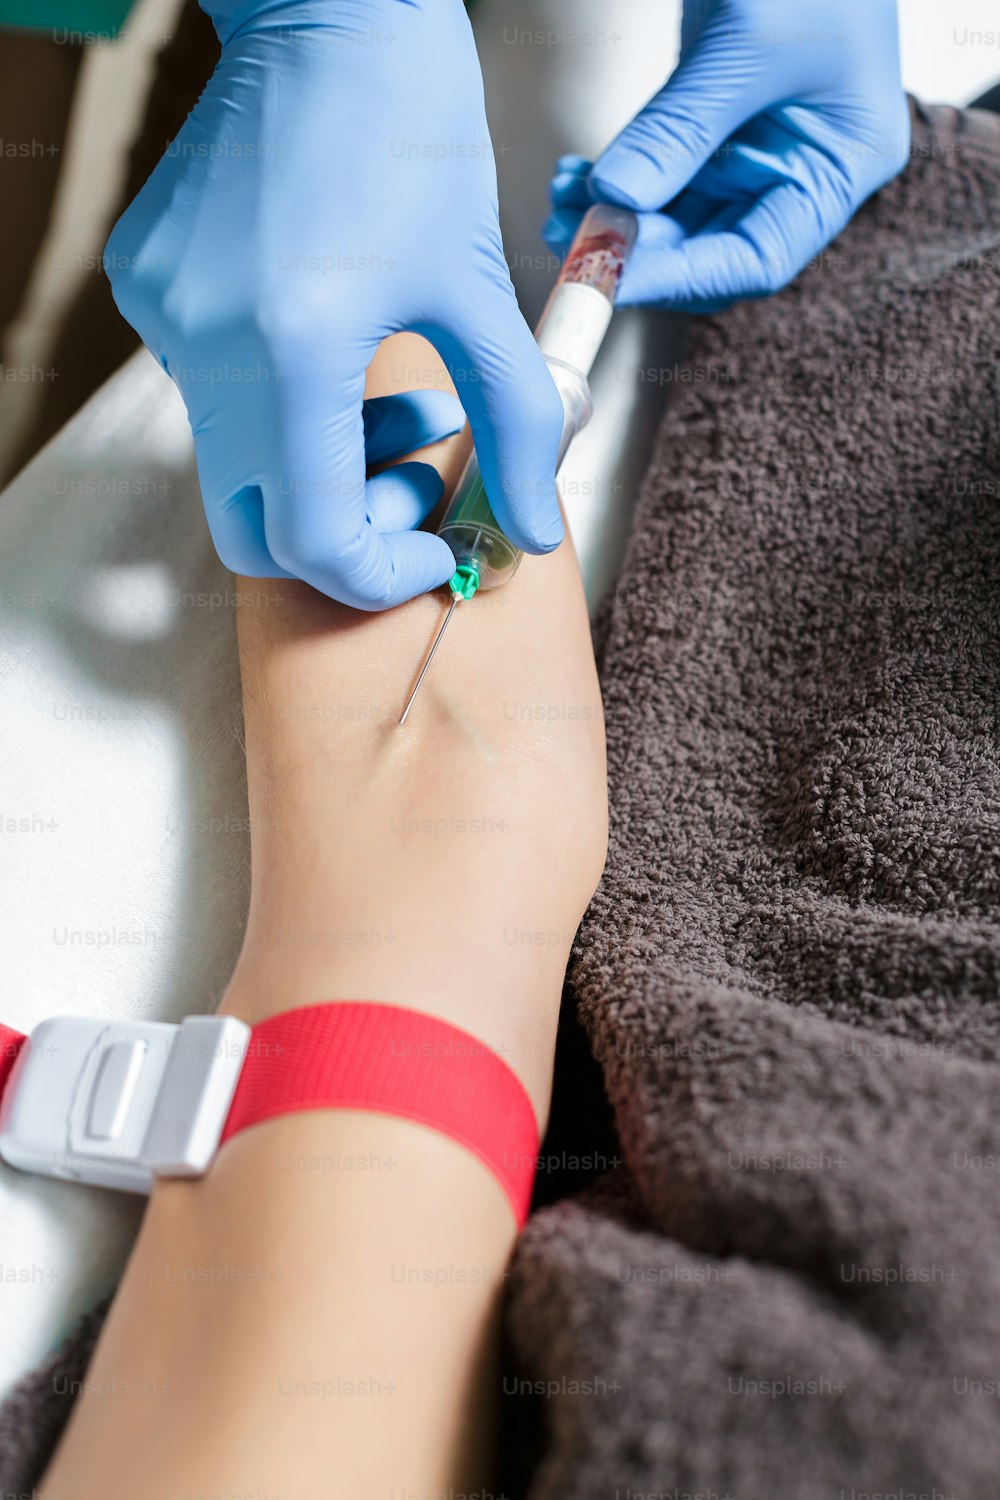 infirmière prélevant un échantillon de sang sur le bras du patient. Préparation du sang à la procédure Plasmolifting.